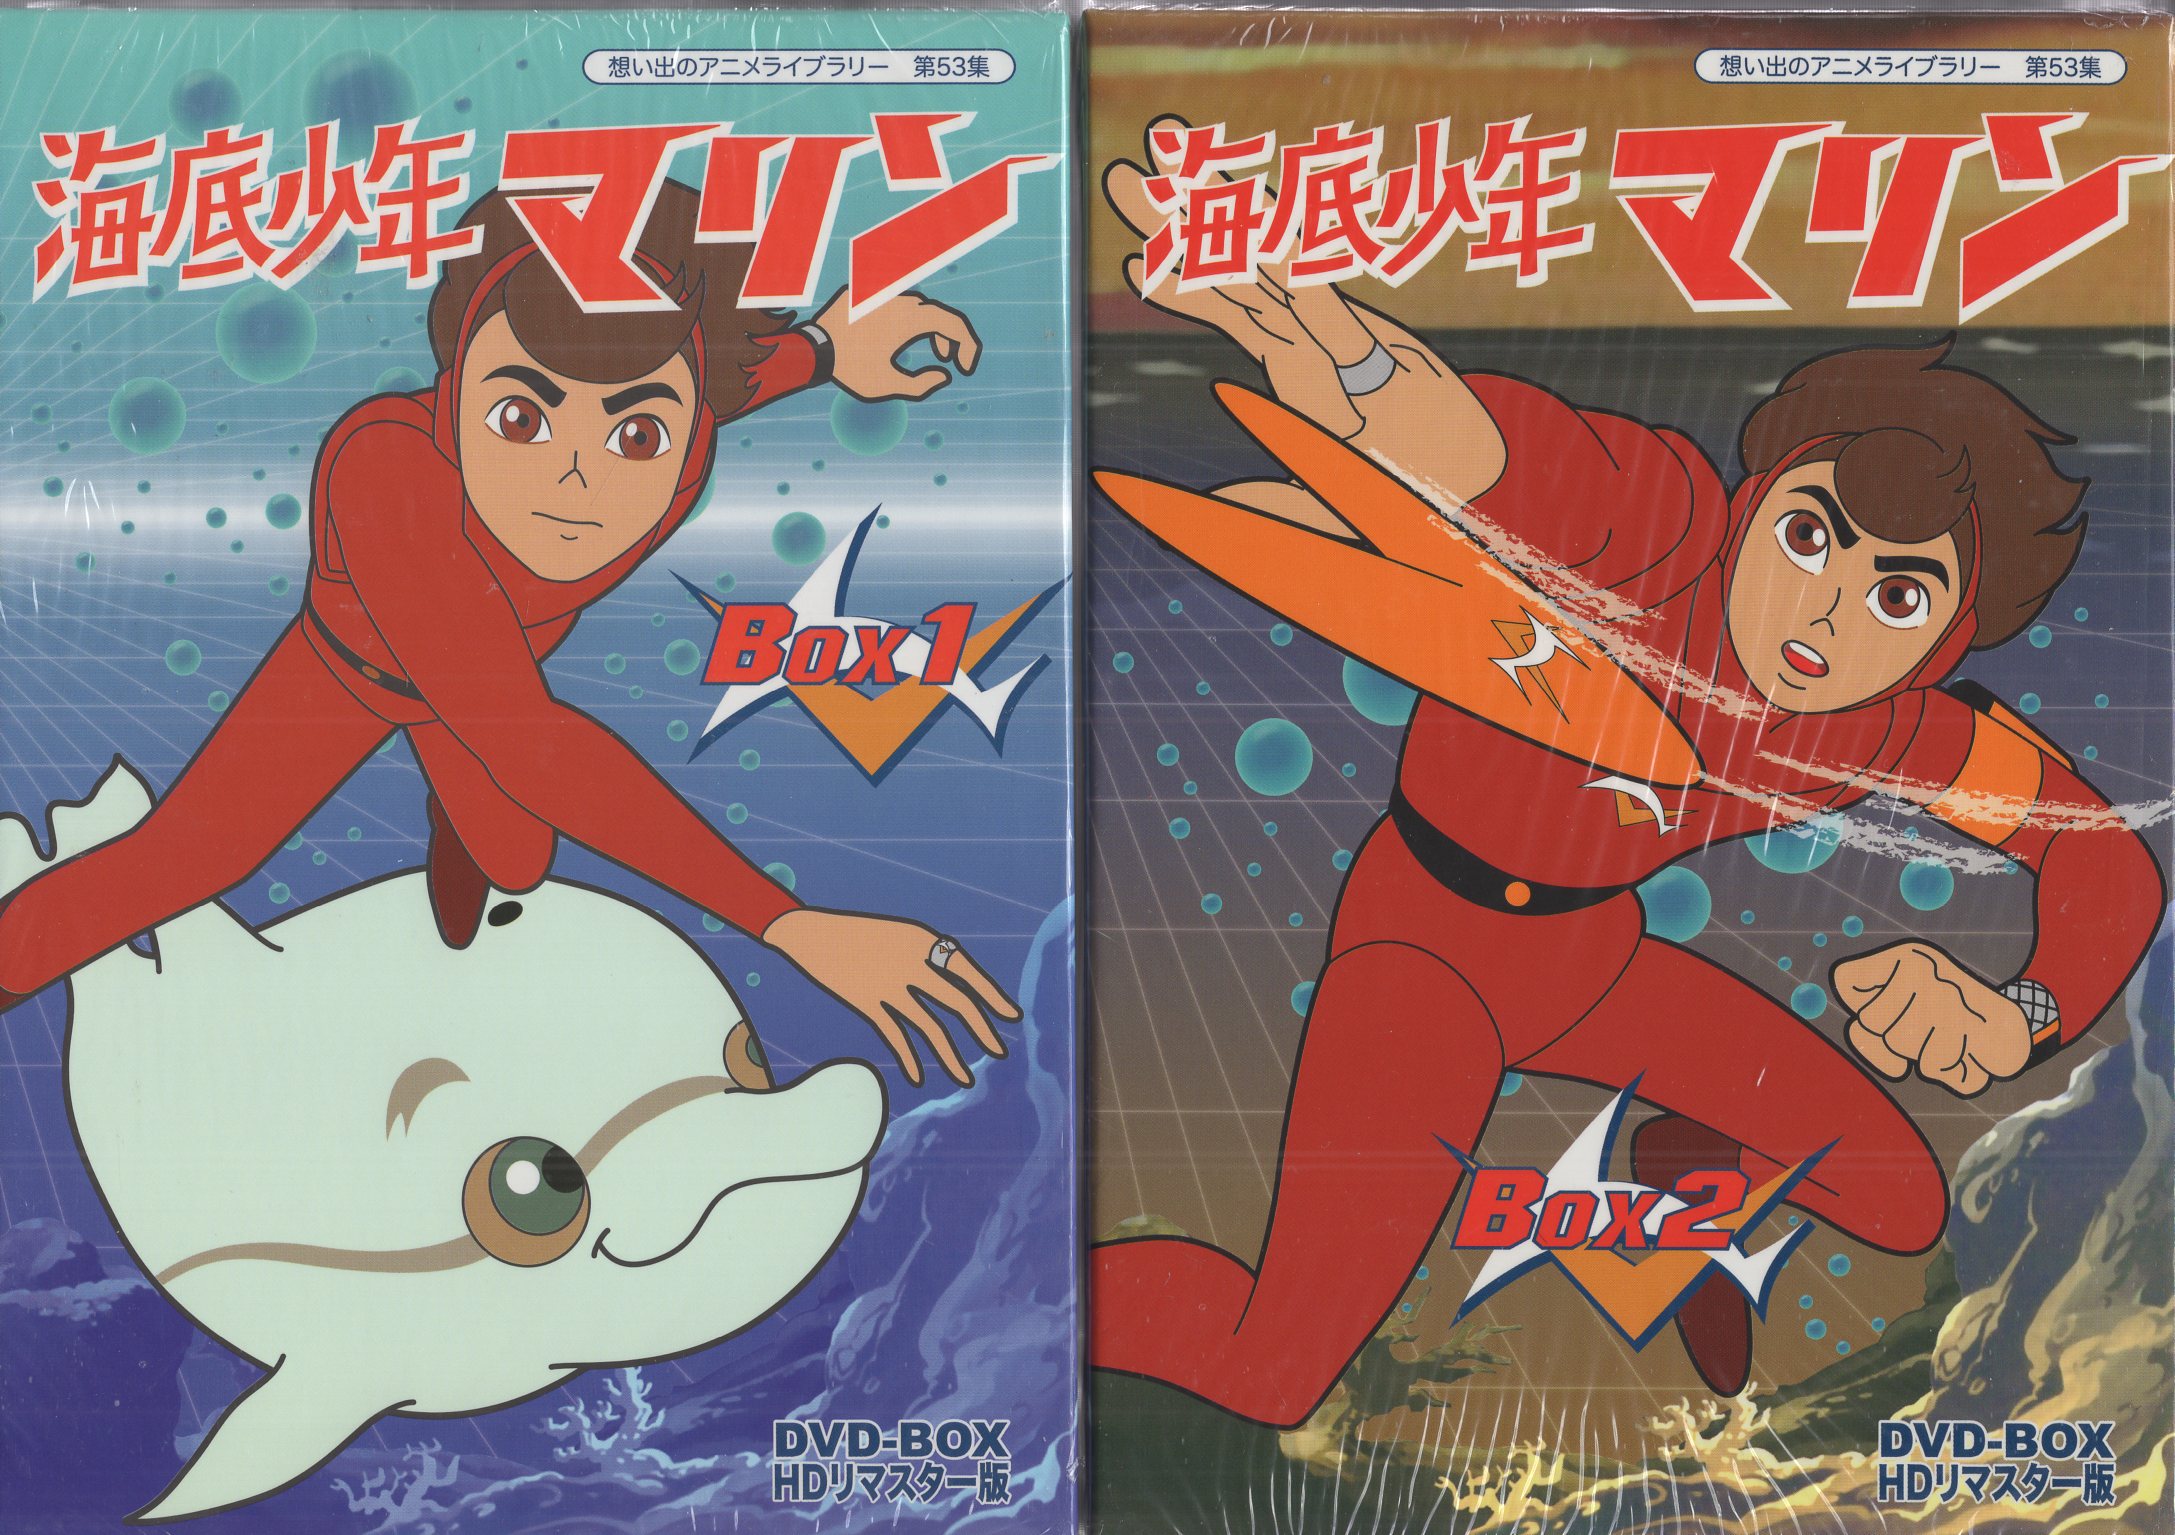 想い出のアニメライブラリー  海底少年マリン HDリマスター DVD-BOX1